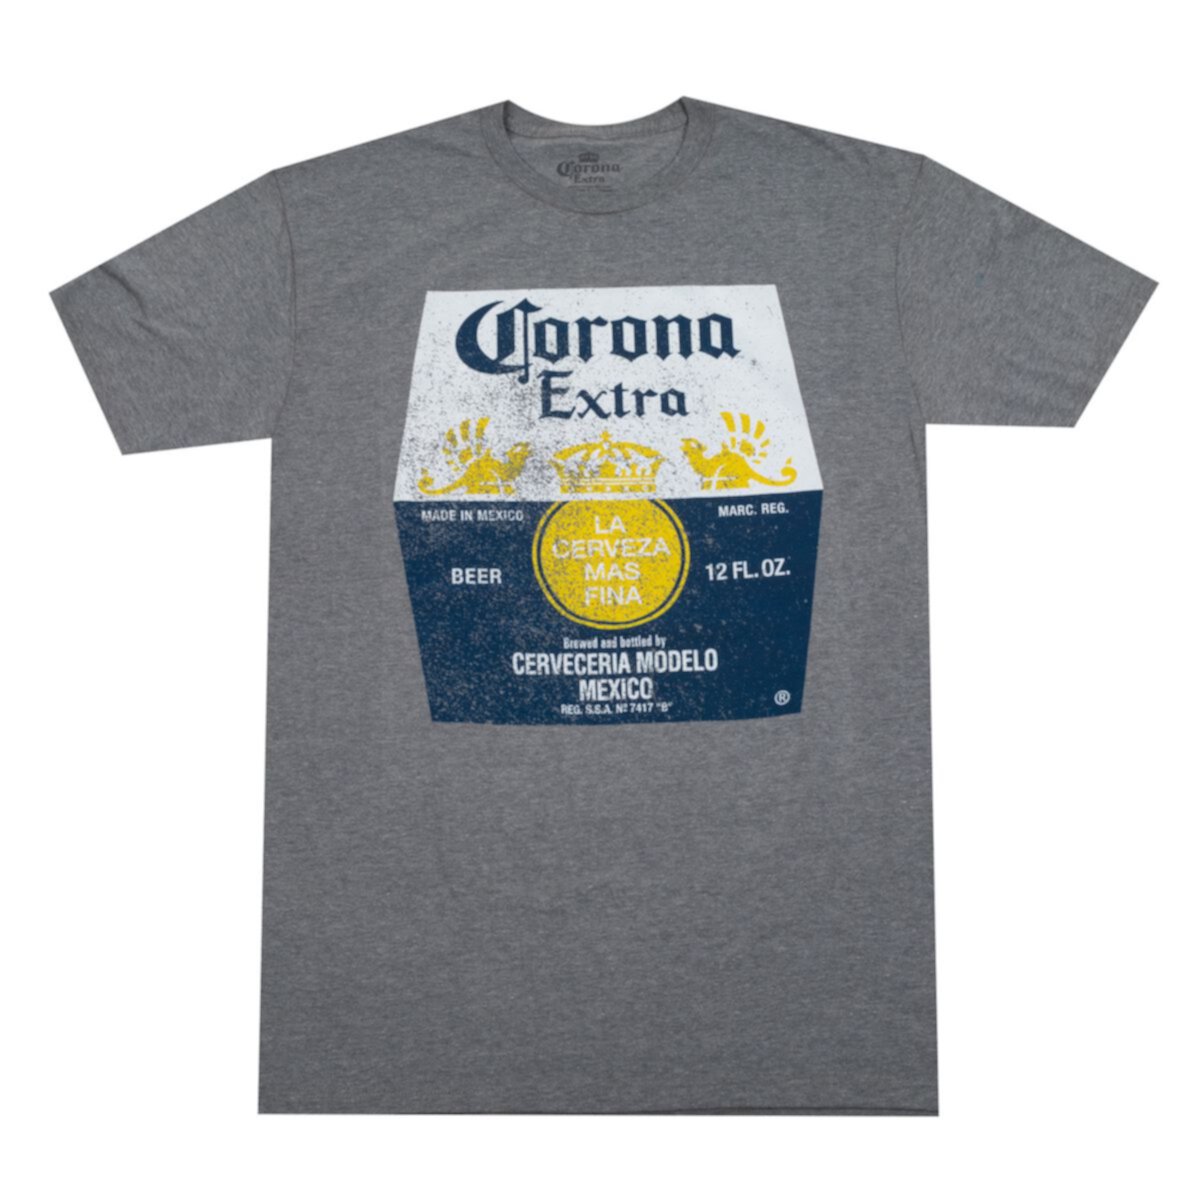 Футболка Big & Tall Corona Extra Beer BIOWORLD